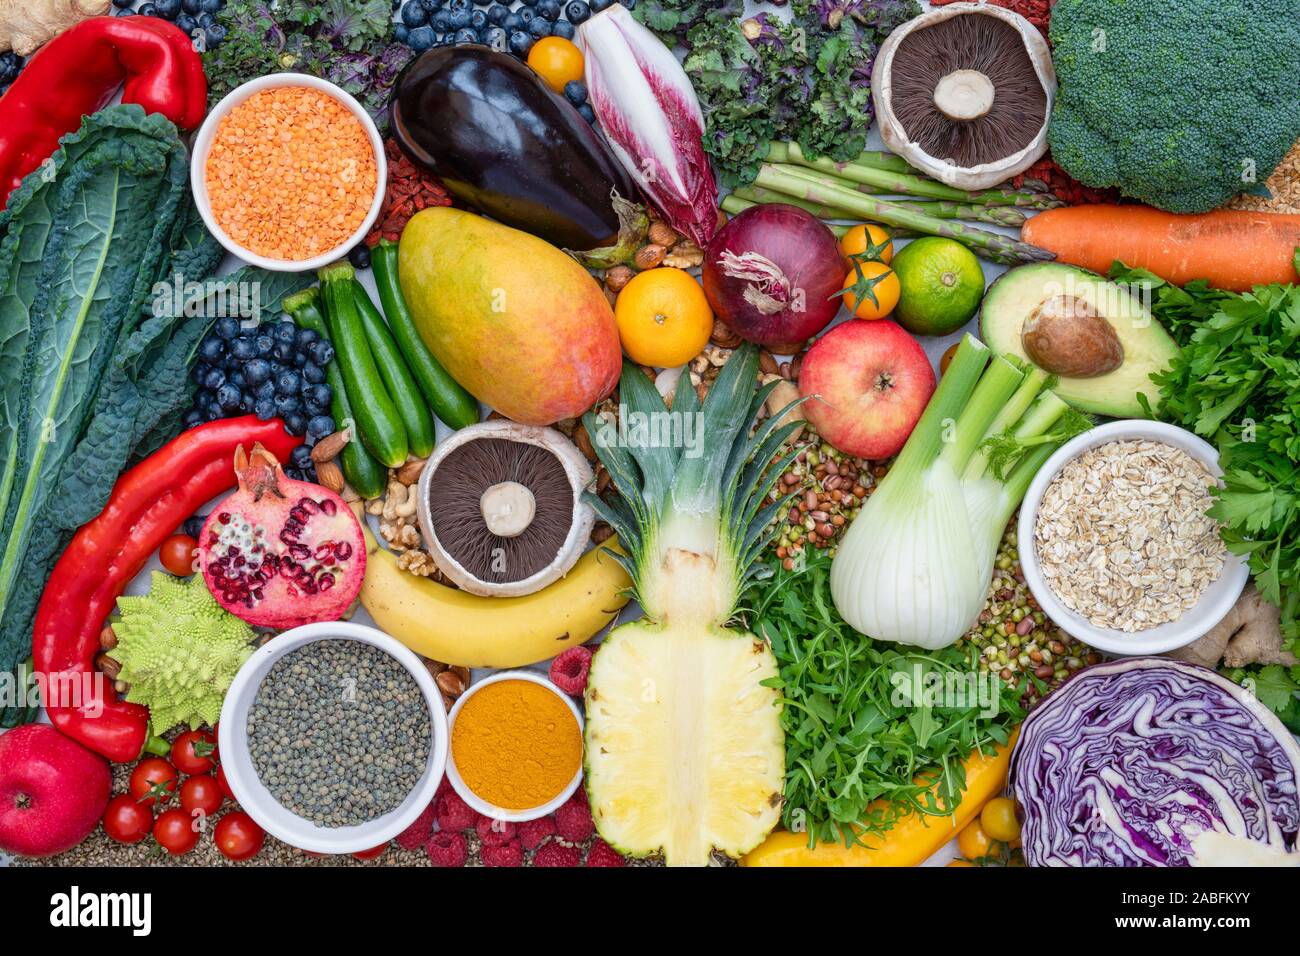 Vegan. Obst Gemüse linsen Gewürze Kräuter Nüsse und Samen auf weißem Schiefer Hintergrund Stockfoto